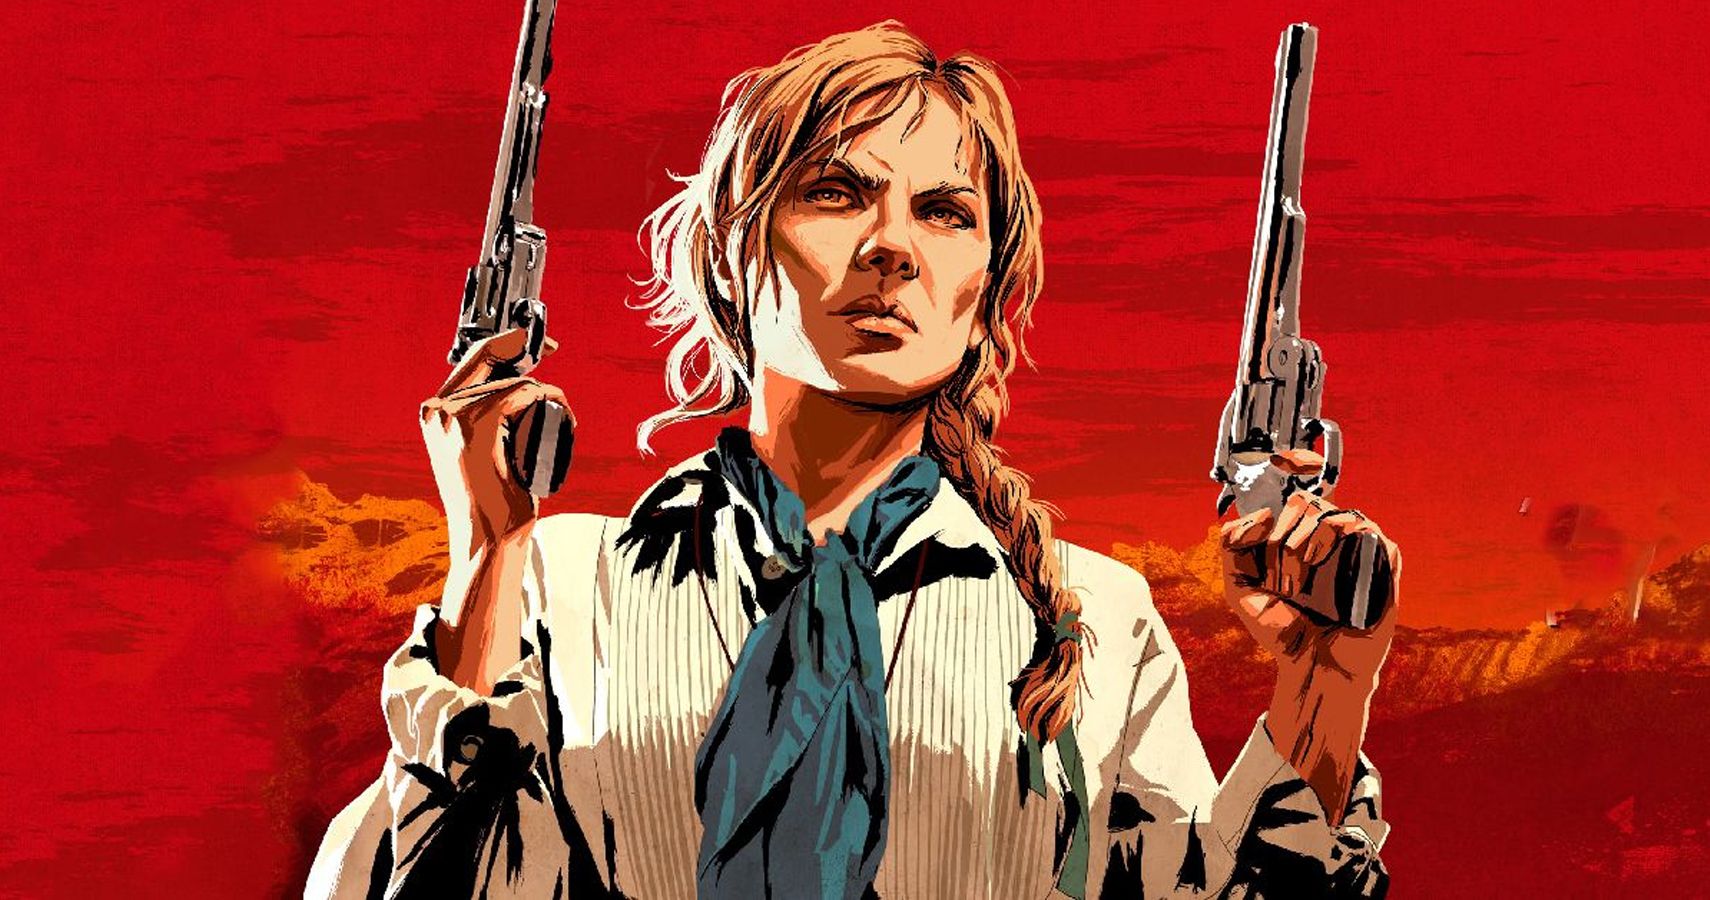 Top 10: Mejores frases de Arthur Morgan en Red Dead Redemption 2 